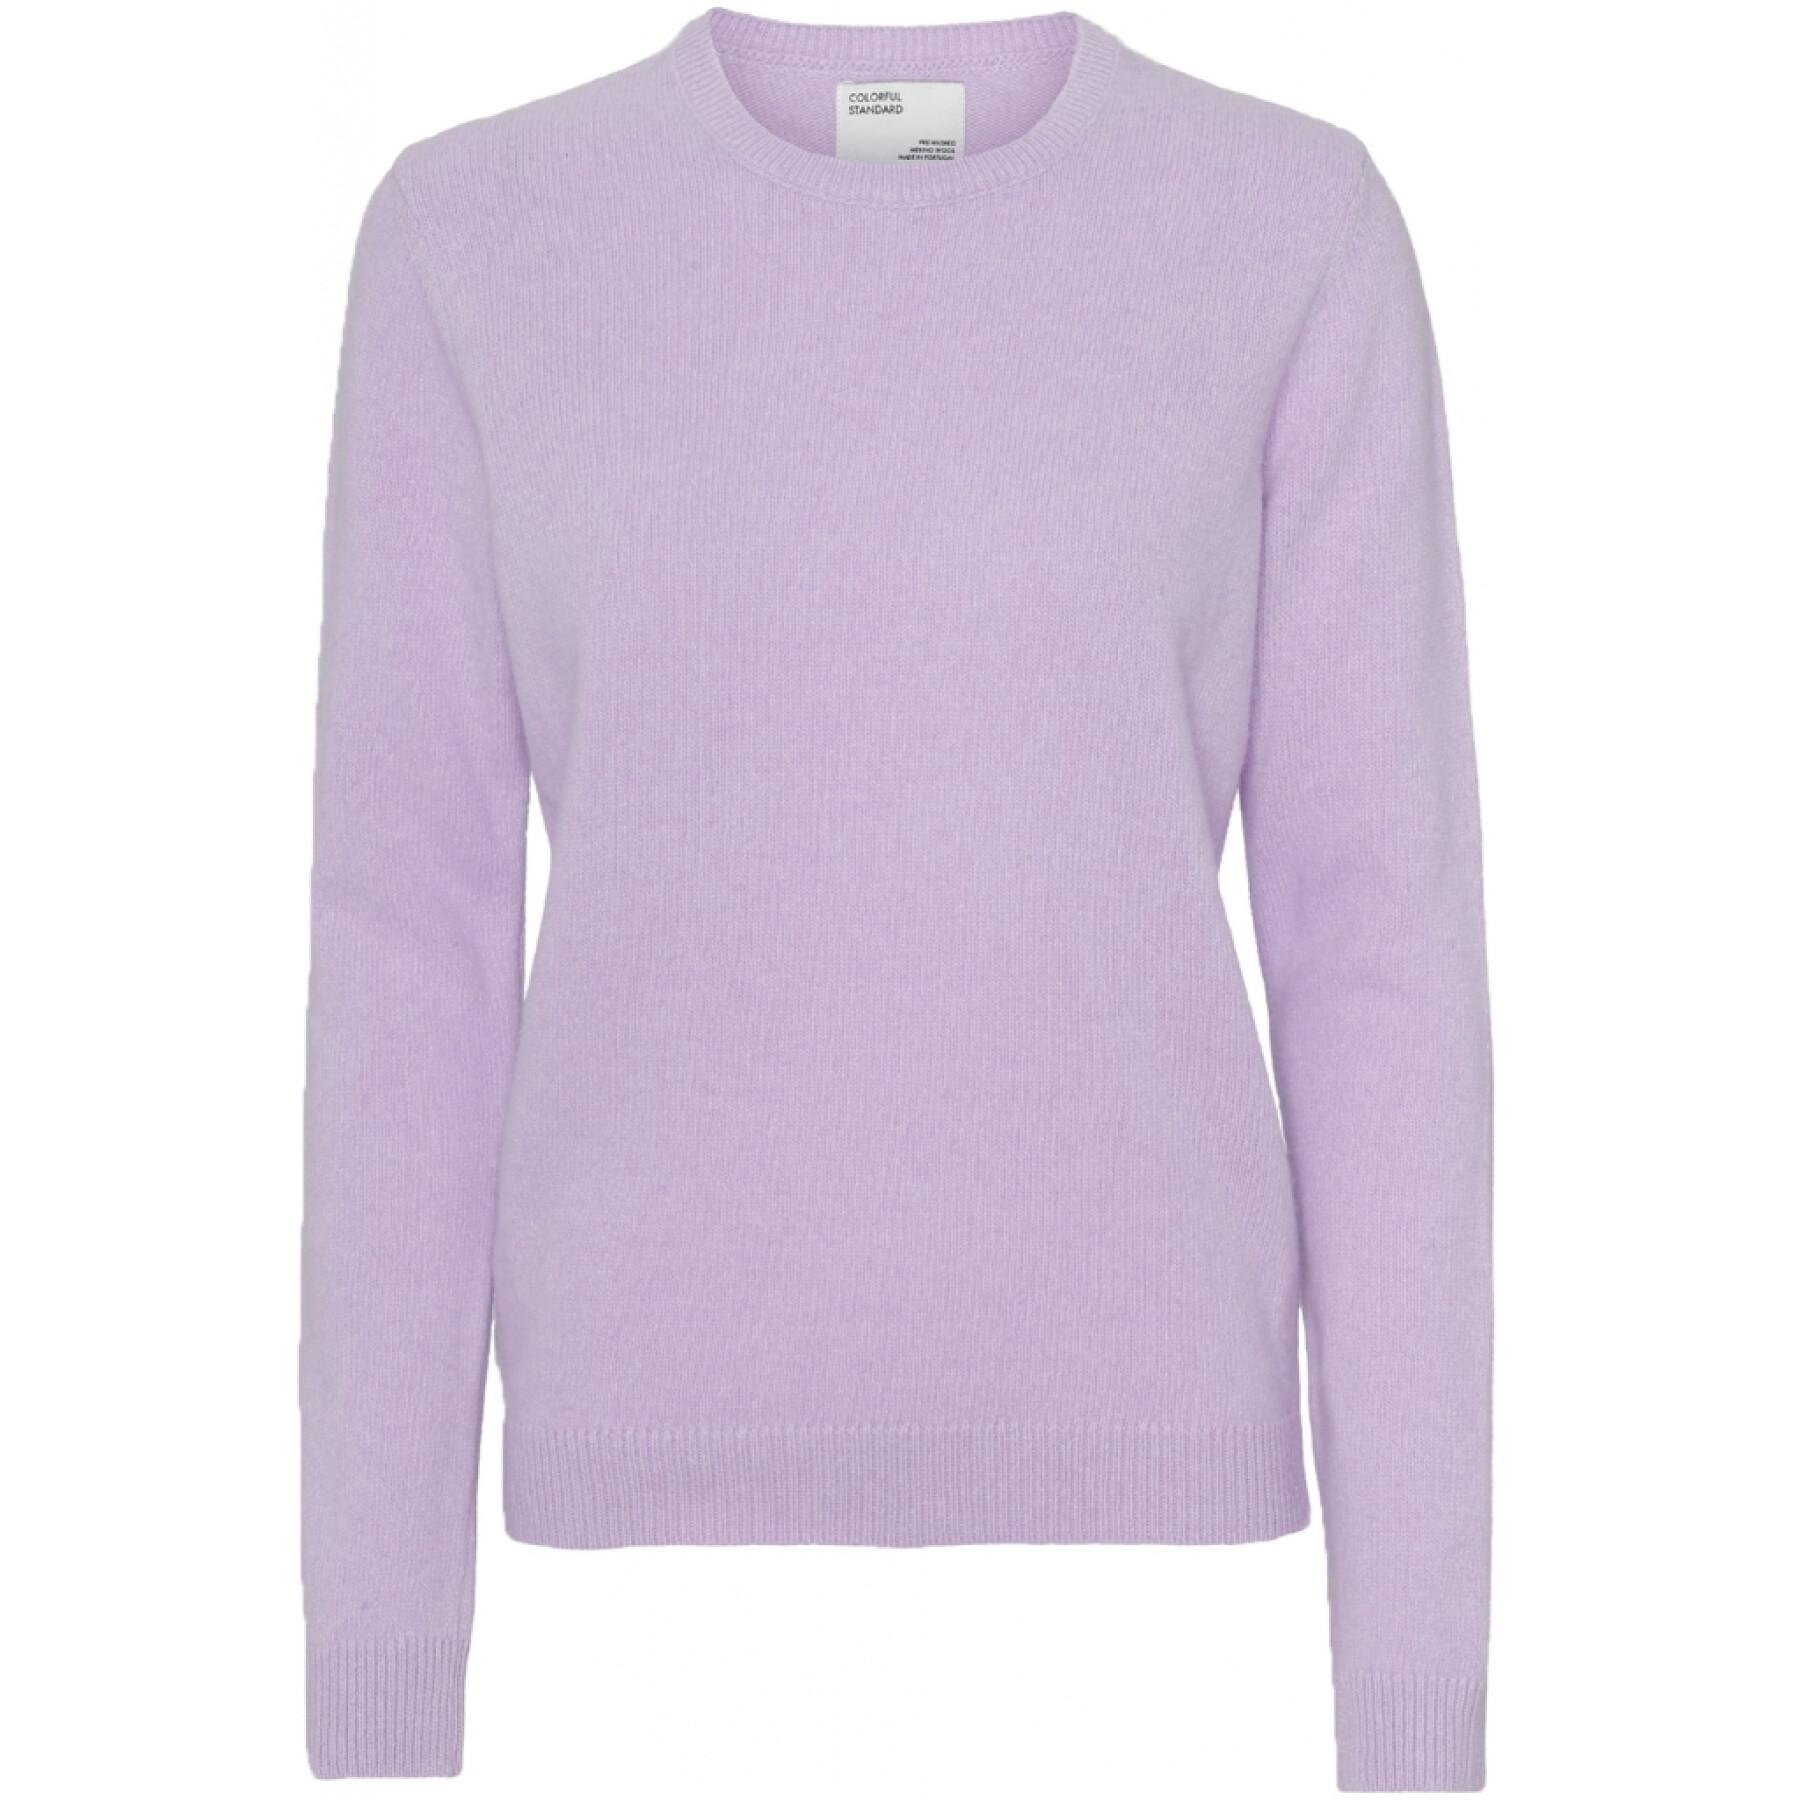 Maglione girocollo in lana da donna Colorful Standard Classic Merino soft lavender